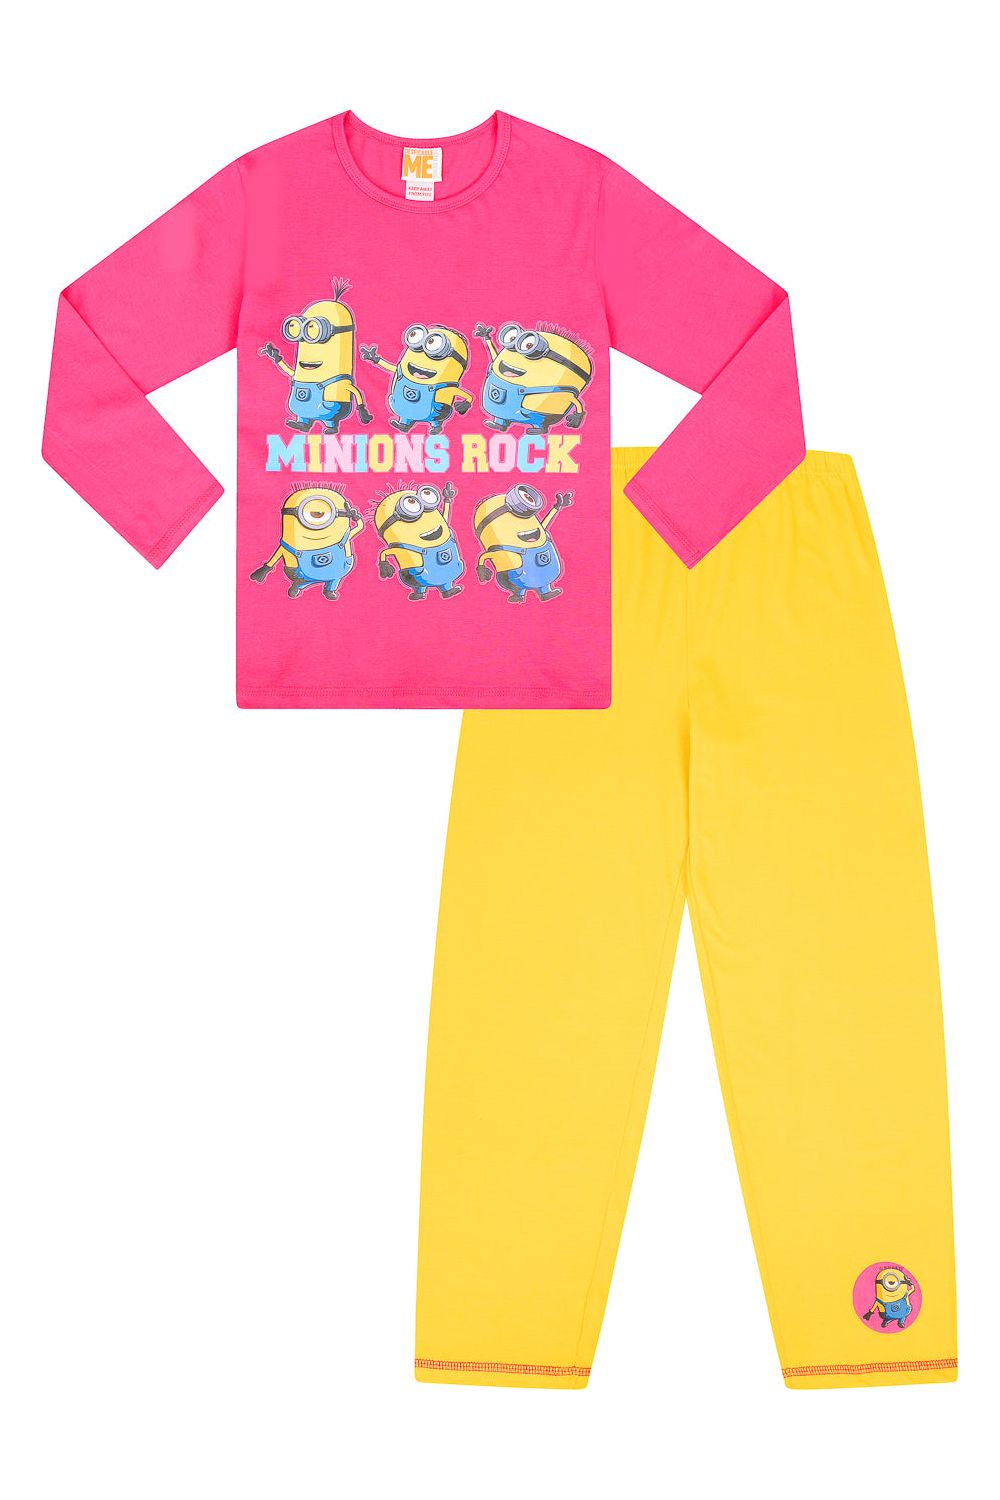 Girls Minions Rock Long Pyjamas - Pyjamas.com